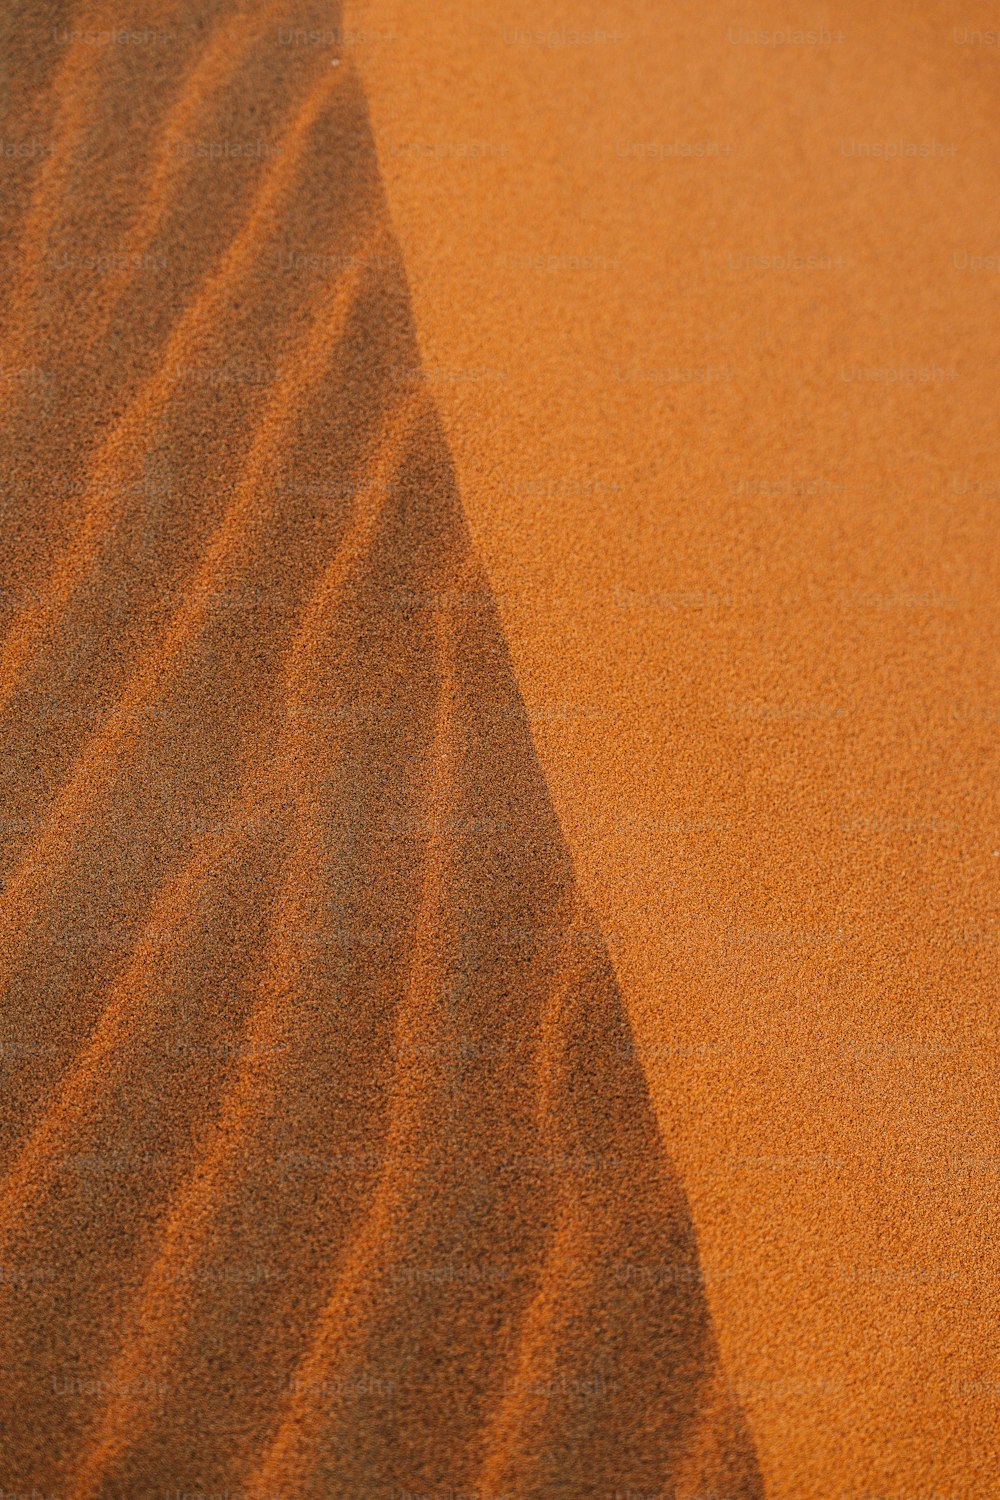 Una scena desertica con una duna di sabbia in lontananza